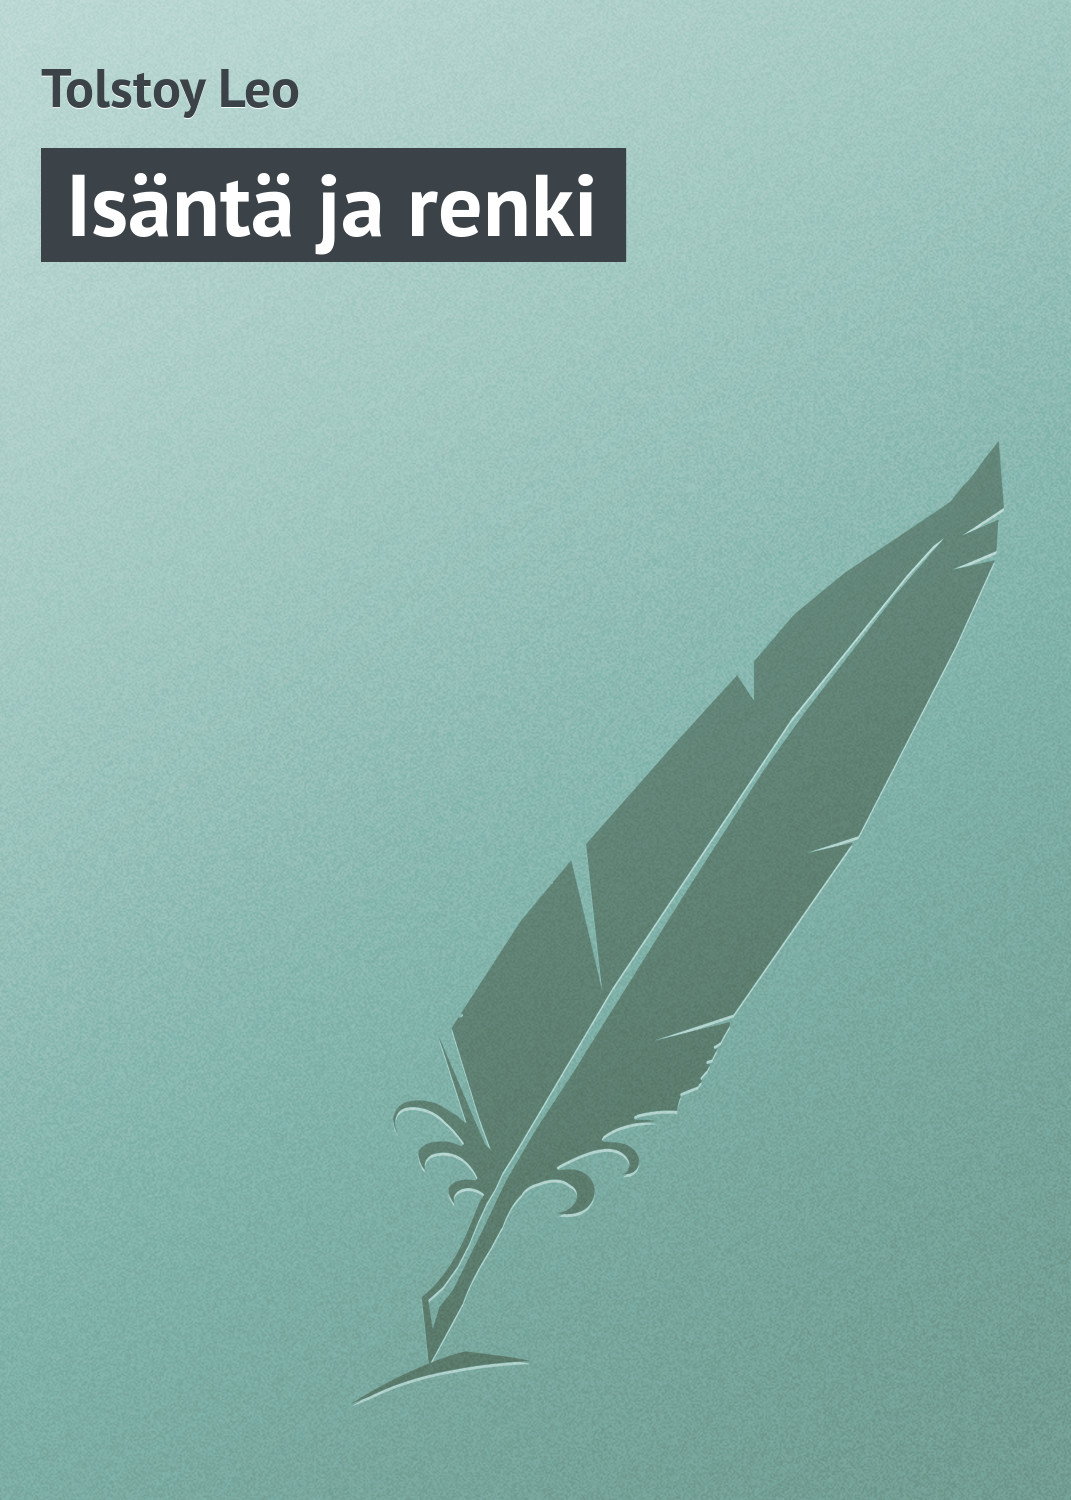 Книга Isäntä ja renki из серии , созданная Leo Tolstoy, может относится к жанру Русская классика. Стоимость электронной книги Isäntä ja renki с идентификатором 23167955 составляет 5.99 руб.